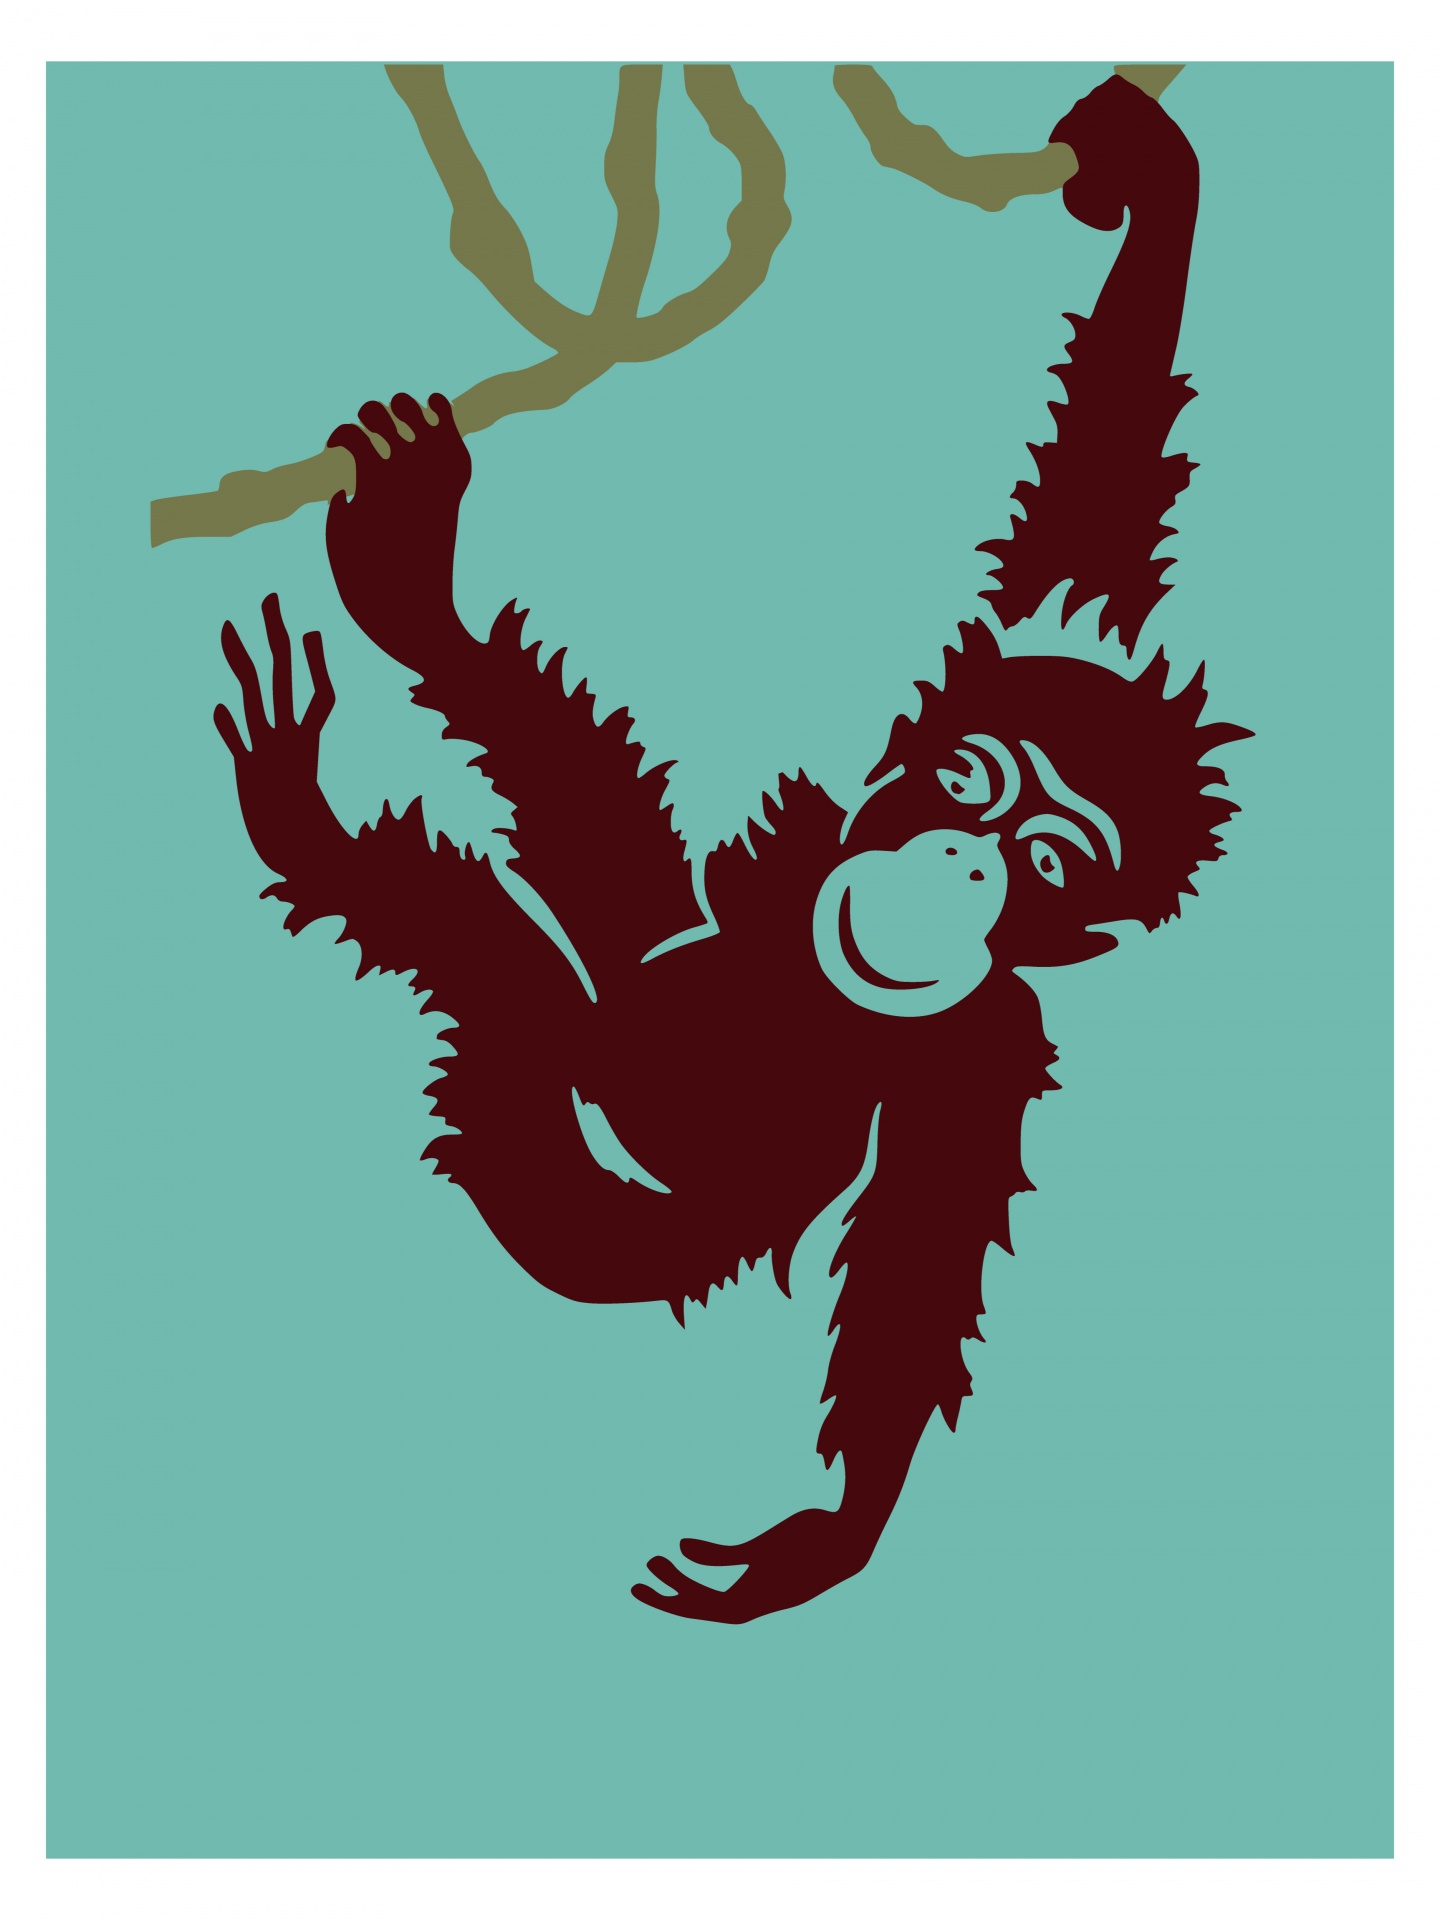 Monkey Poster Print